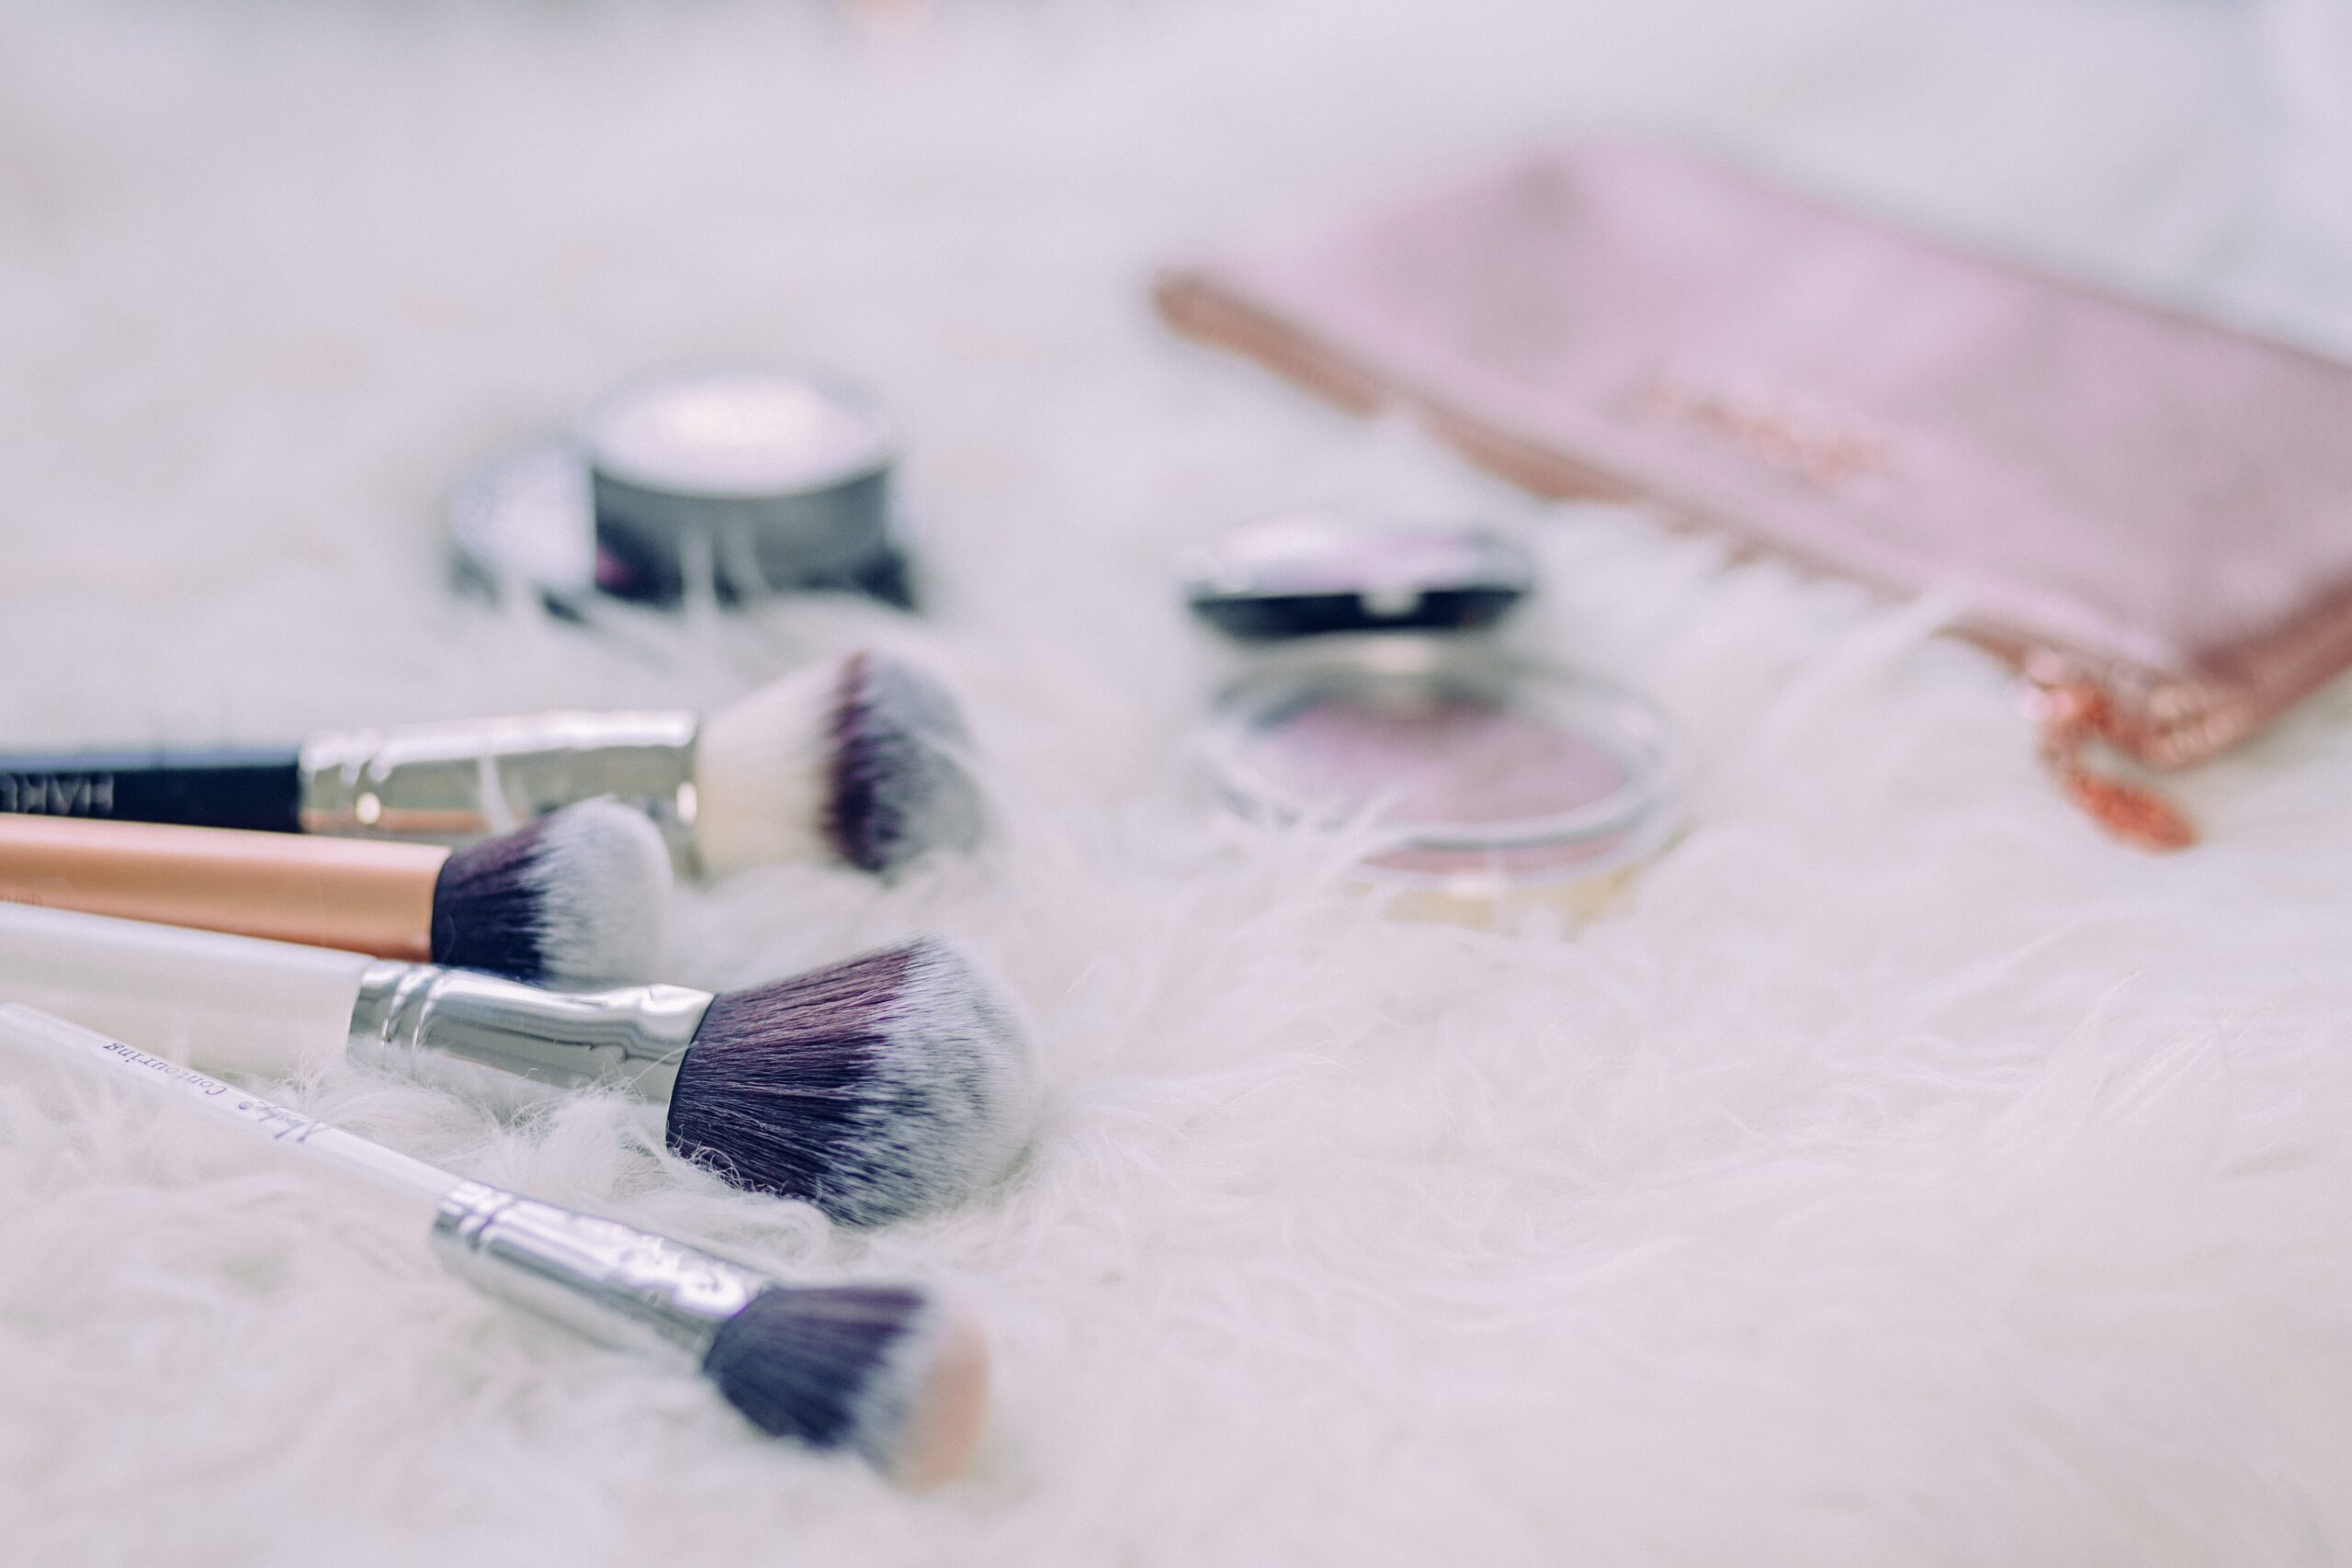 Maquiagem profissional em casa: 15 itens que não podem faltar na